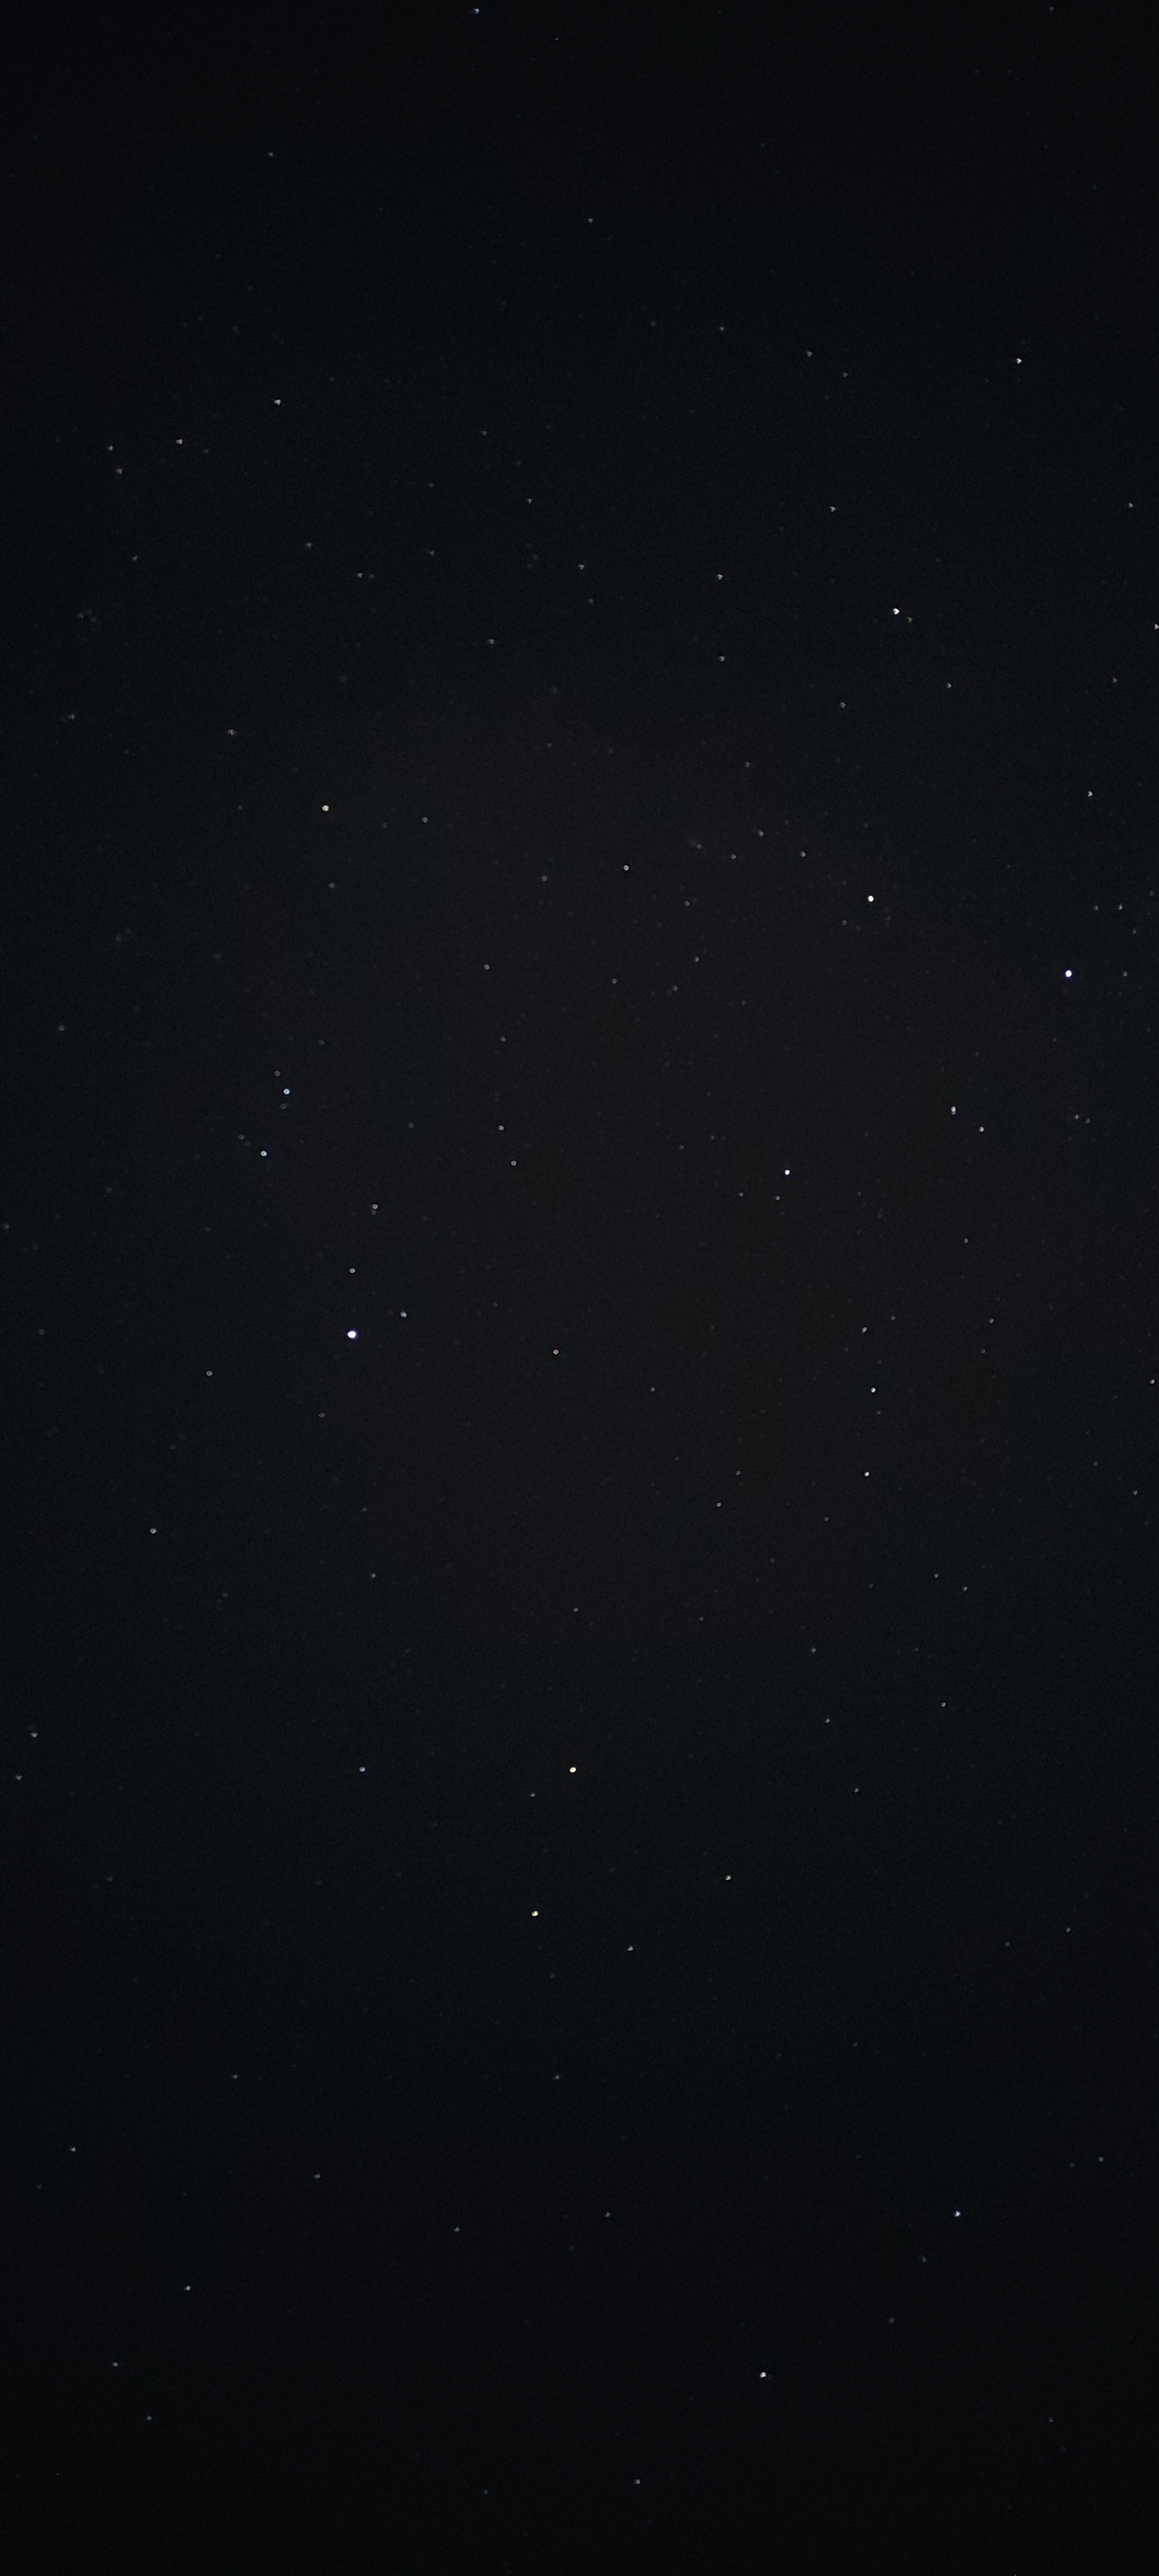 sarajevo-sky-by-night-igman-10.jpg